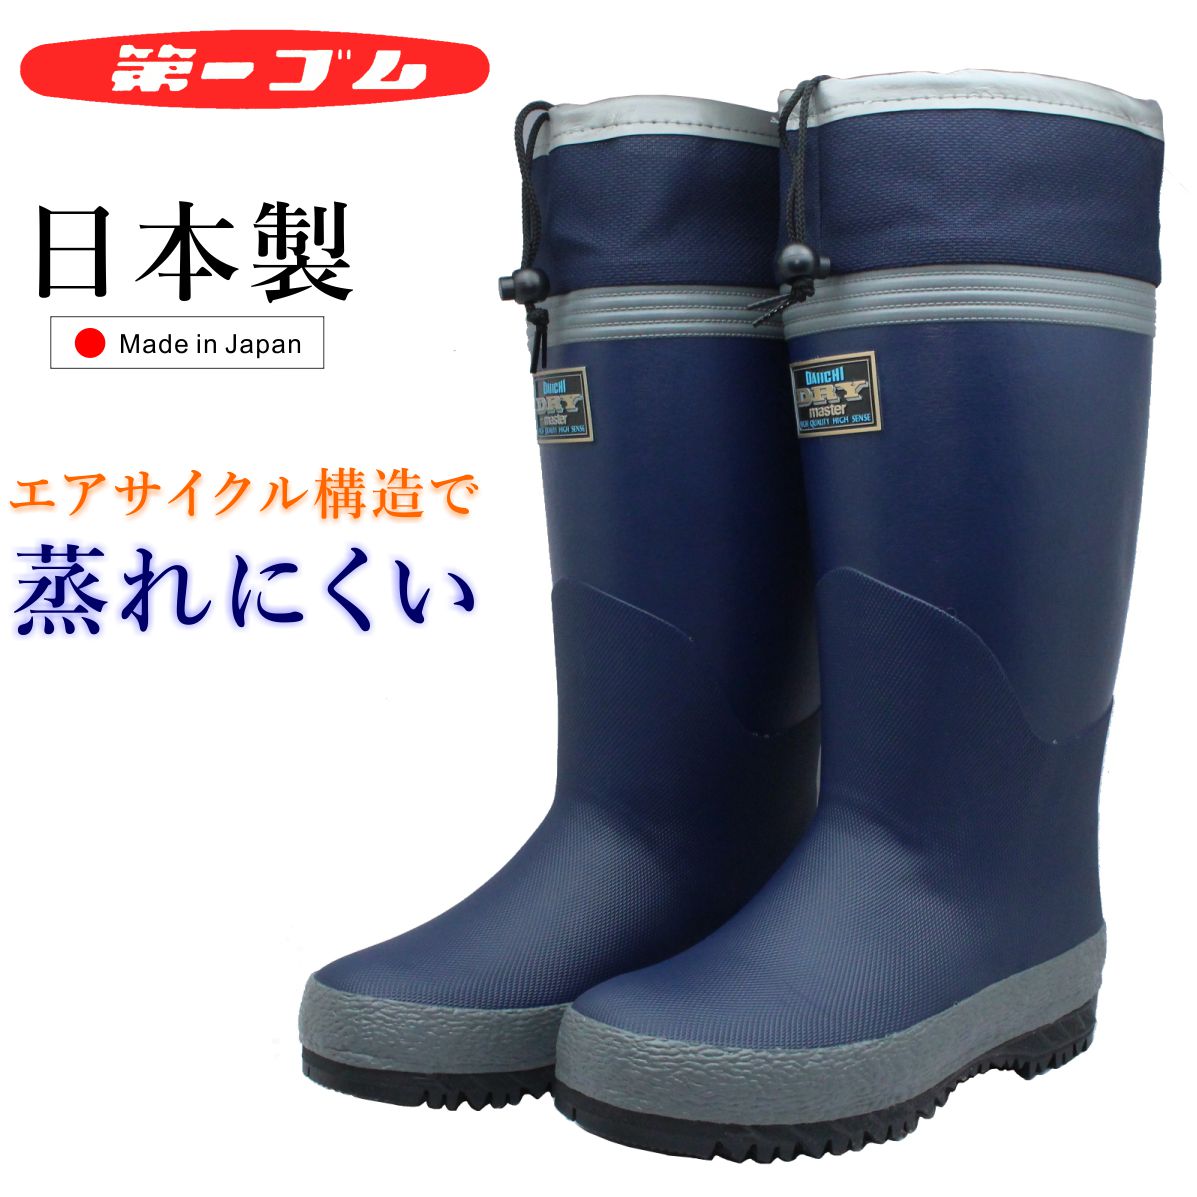 楽天ミッキー靴店第一ゴム メンズ ドライマスター K75 長靴 ムレ予防 防湿 防滑 完全防水 日本製